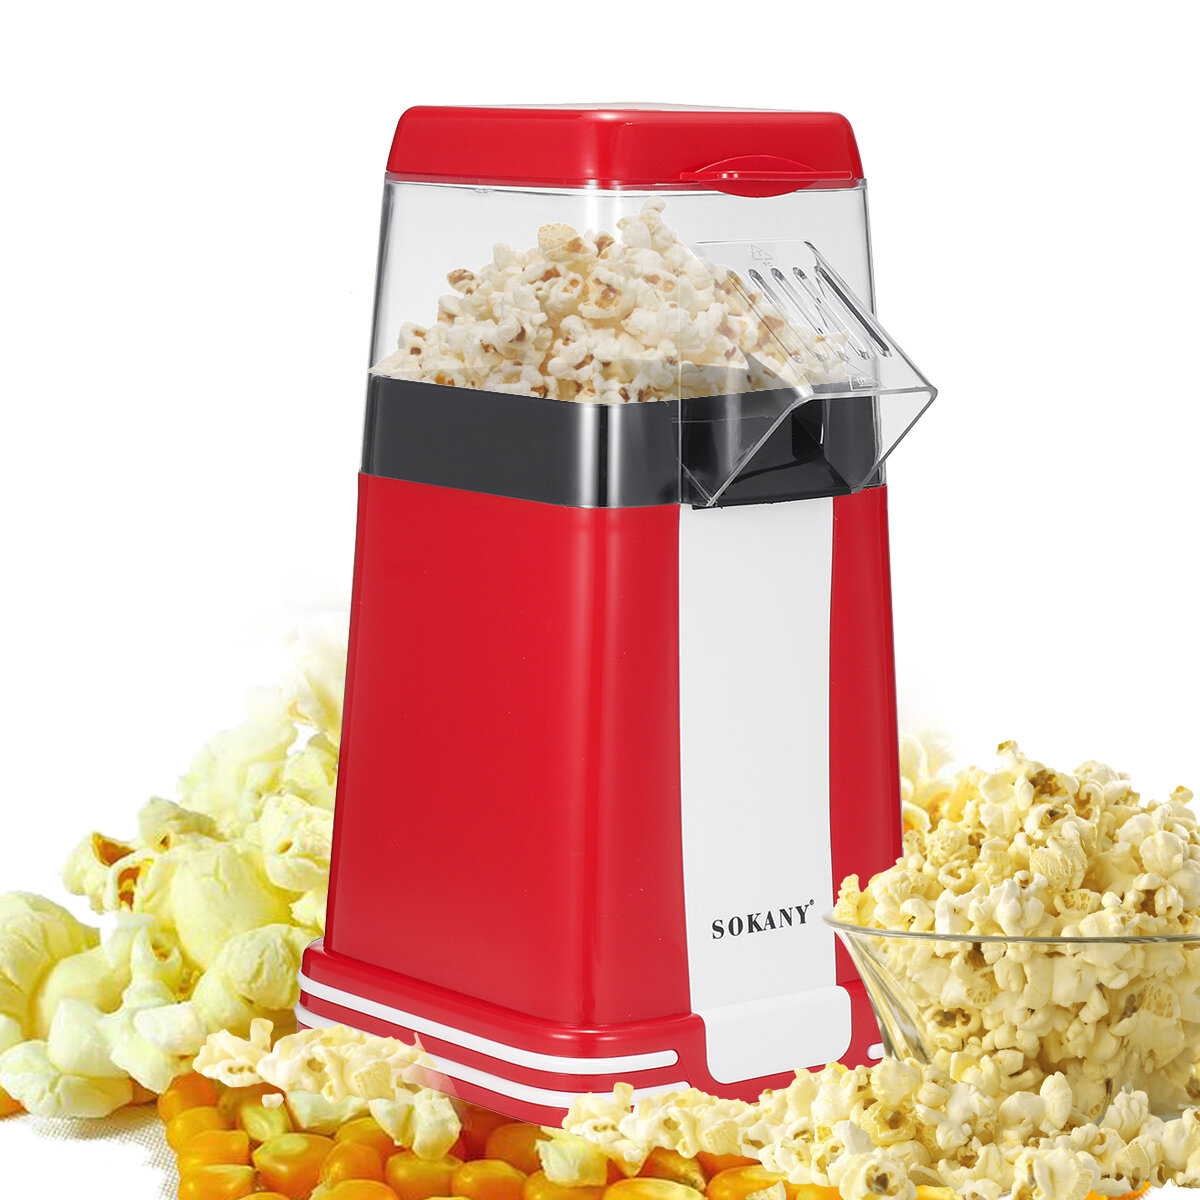 

SOKANY SK-289 Popcorn Maker Мощная электрическая машина для попкорна мощностью 1200 Вт с противоскользящей подушечкой дл